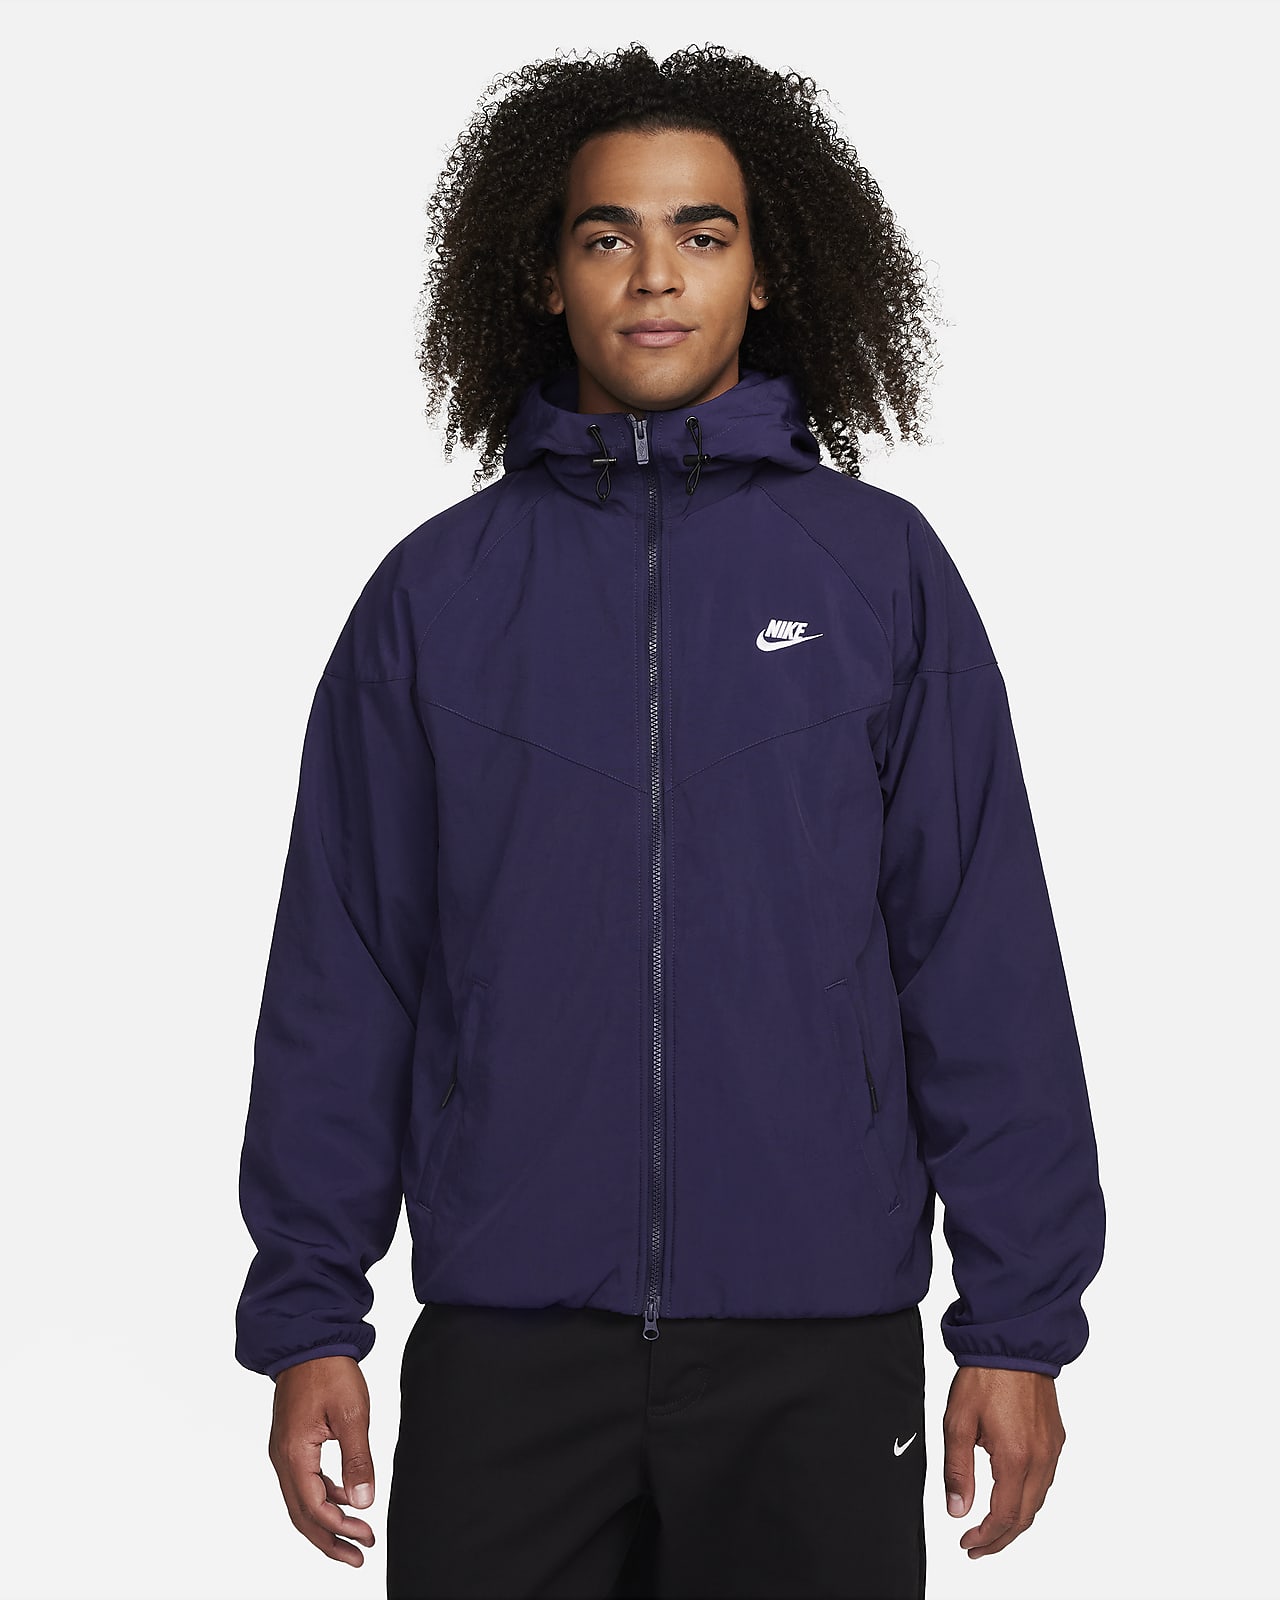 Nike Sportswear Windrunner Men's Jacket